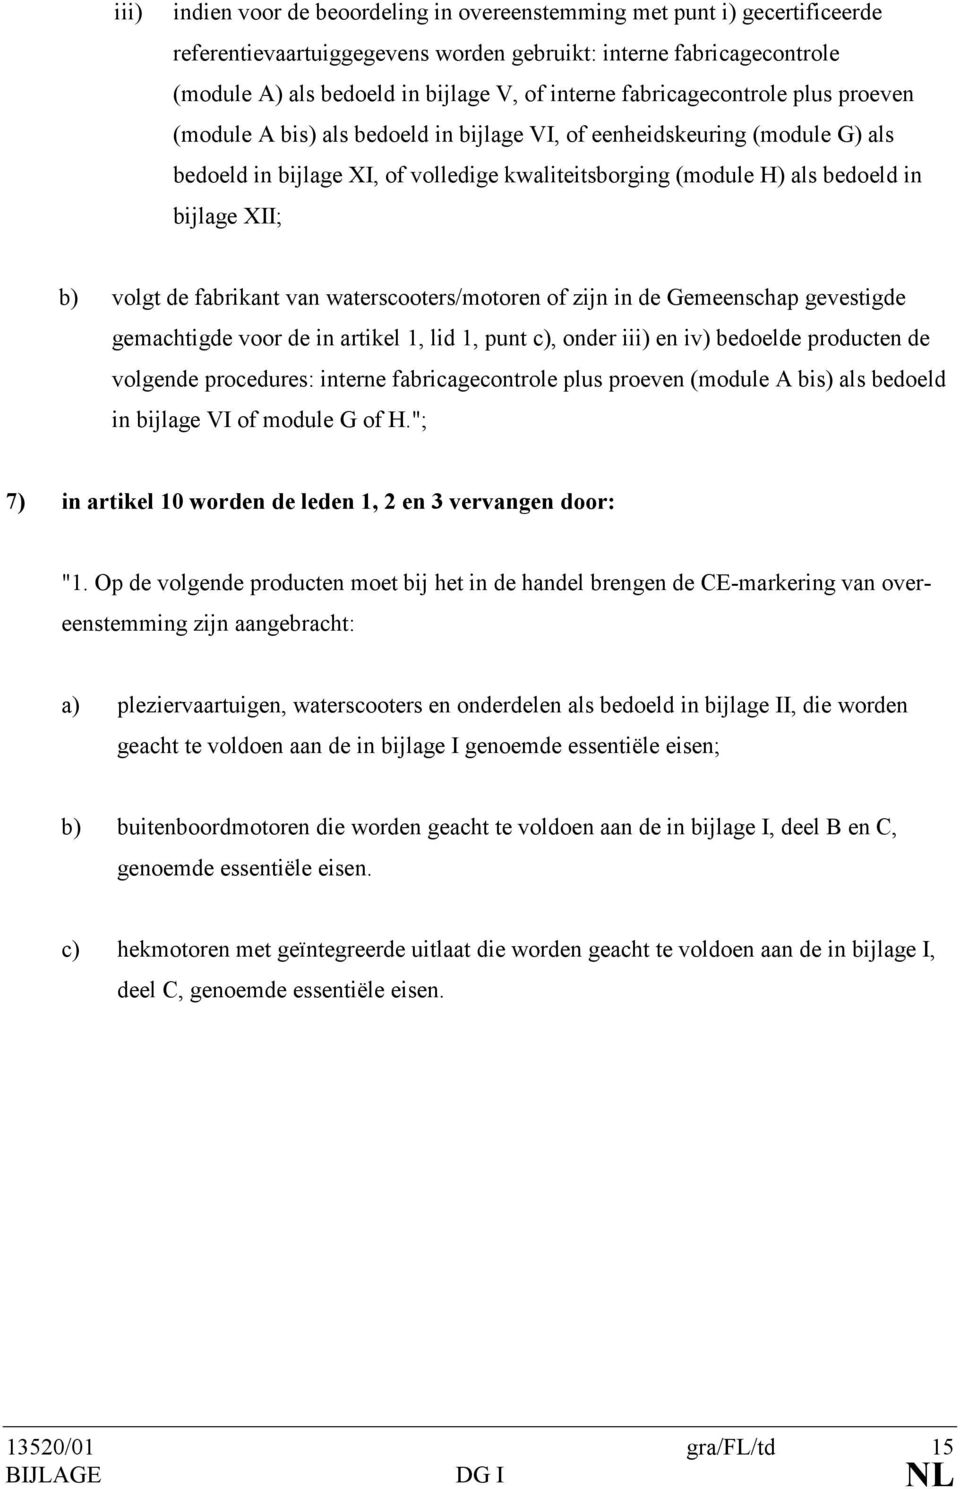 b) volgt de fabrikant van waterscooters/motoren of zijn in de Gemeenschap gevestigde gemachtigde voor de in artikel 1, lid 1, punt c), onder iii) en iv) bedoelde producten de volgende procedures: